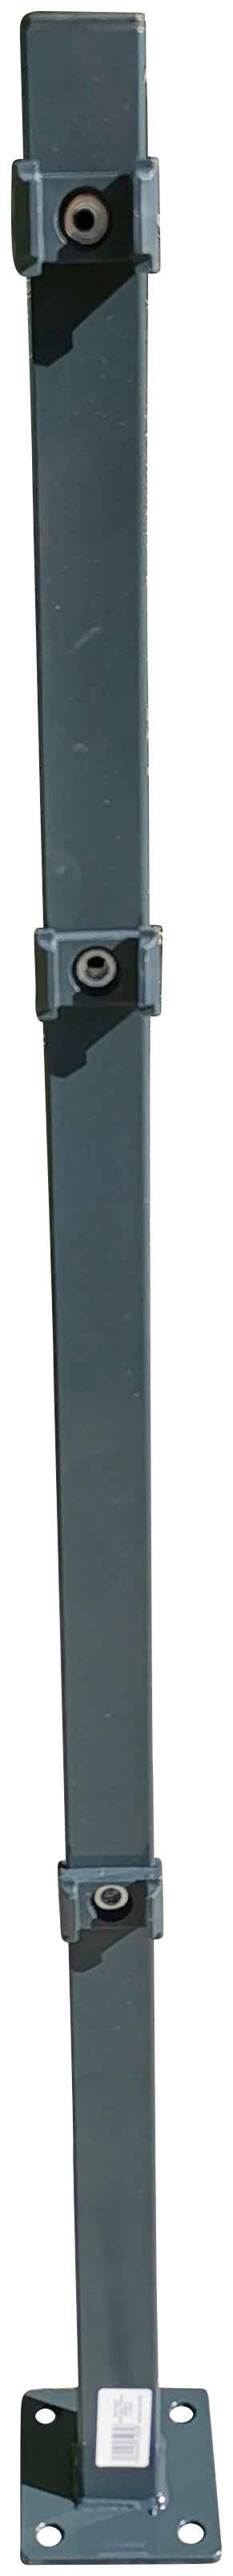 Peddy Shield Zaunpfosten, 130 cm Höhe, für Ein- und Doppelstabmatten